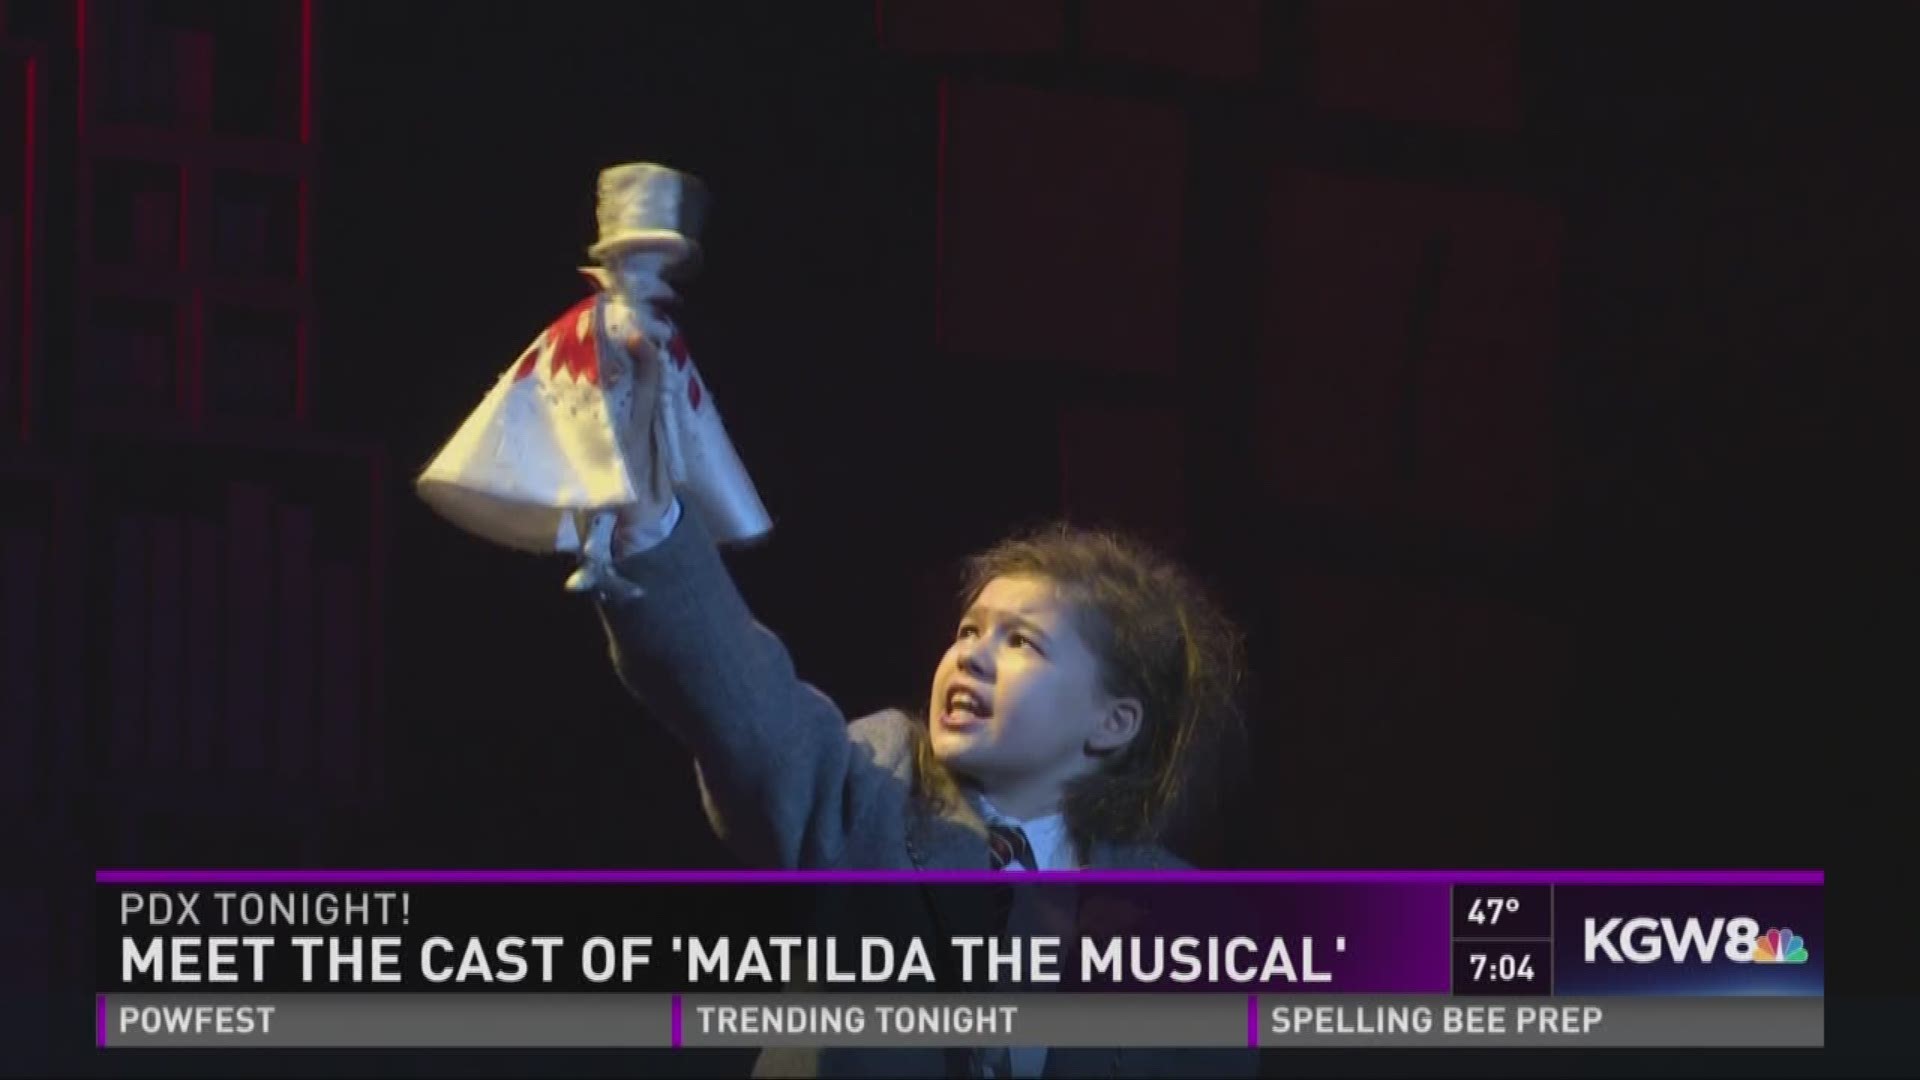 Meet the Cast of 'Matilda the Musical'